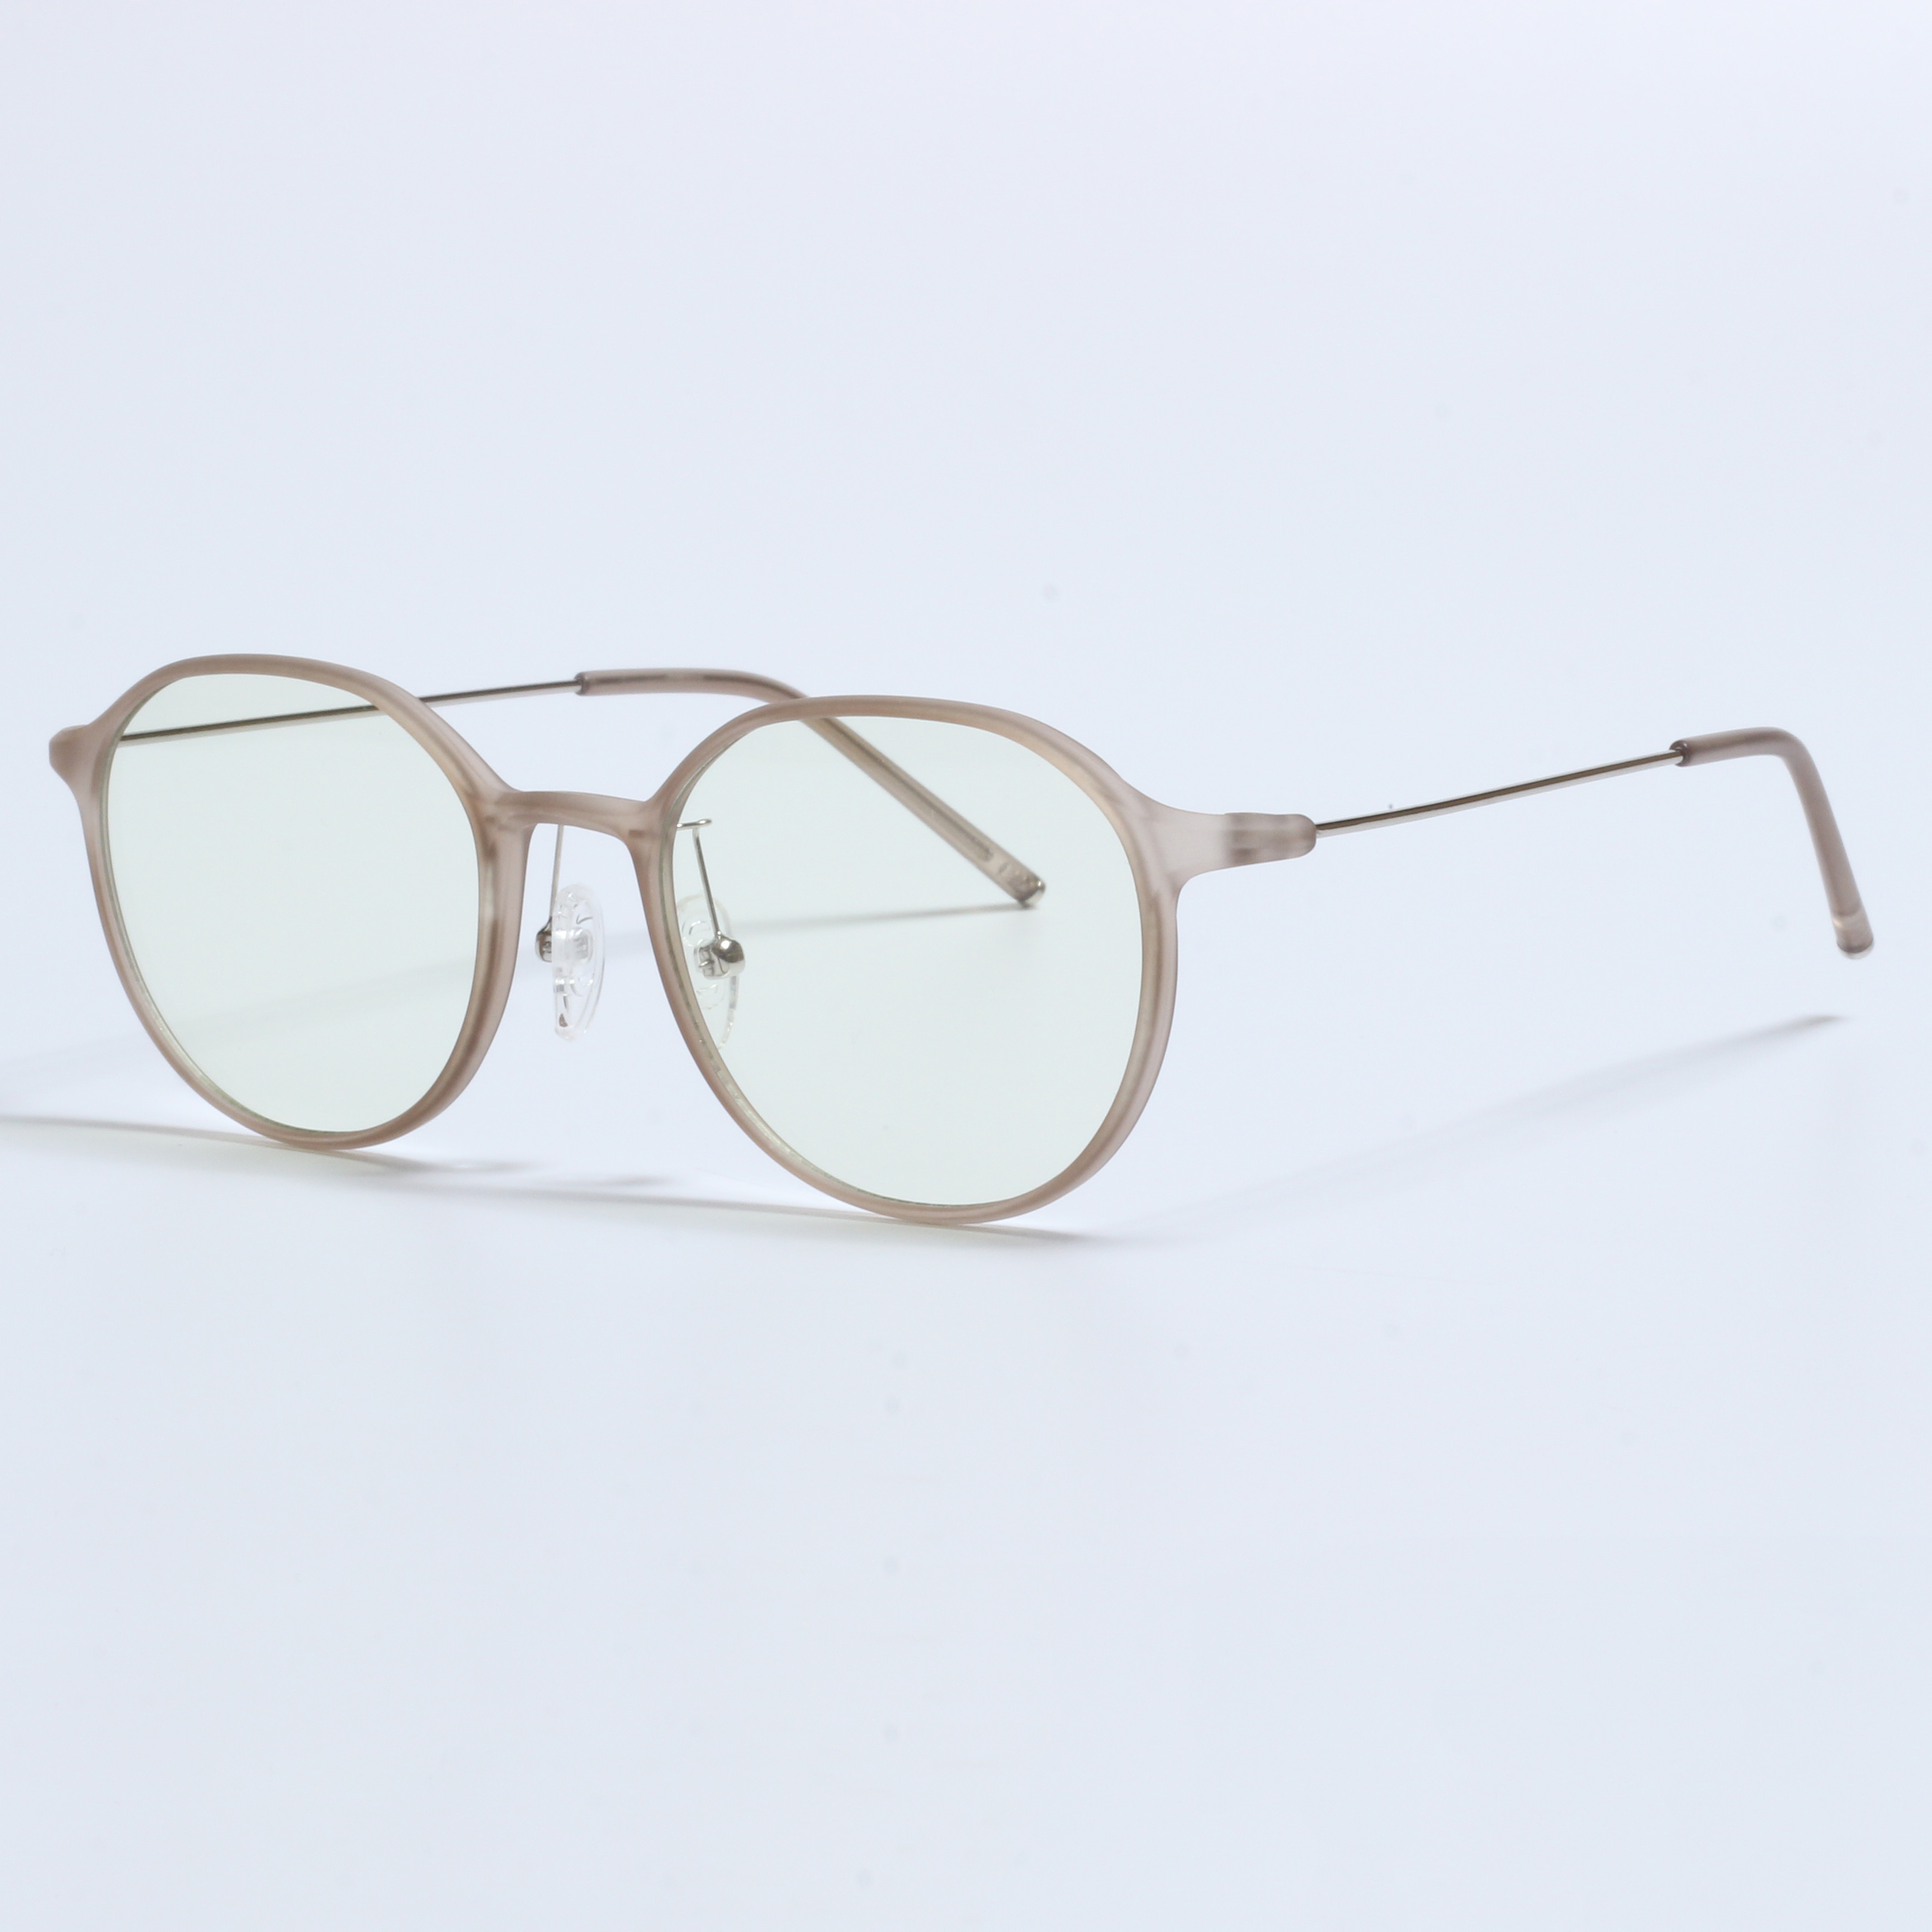 Vintage Thick Gafas Opticas De Hombres Transparent TR90 Frames (7)